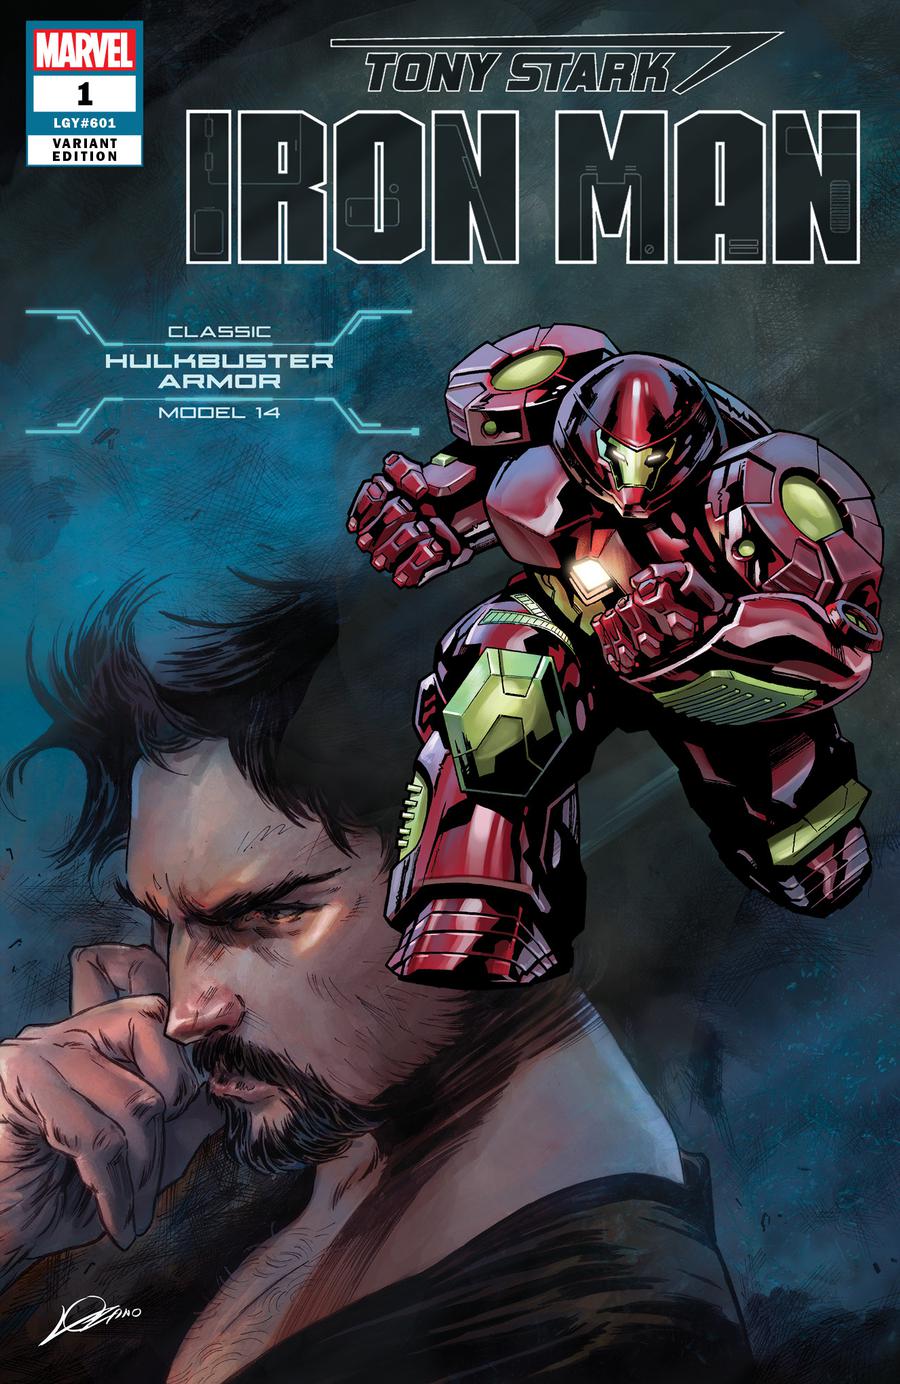 Tony Stark Iron Man #1 Model 14 Classic Hulkbuster Armor Edition (Lozano) [2018]